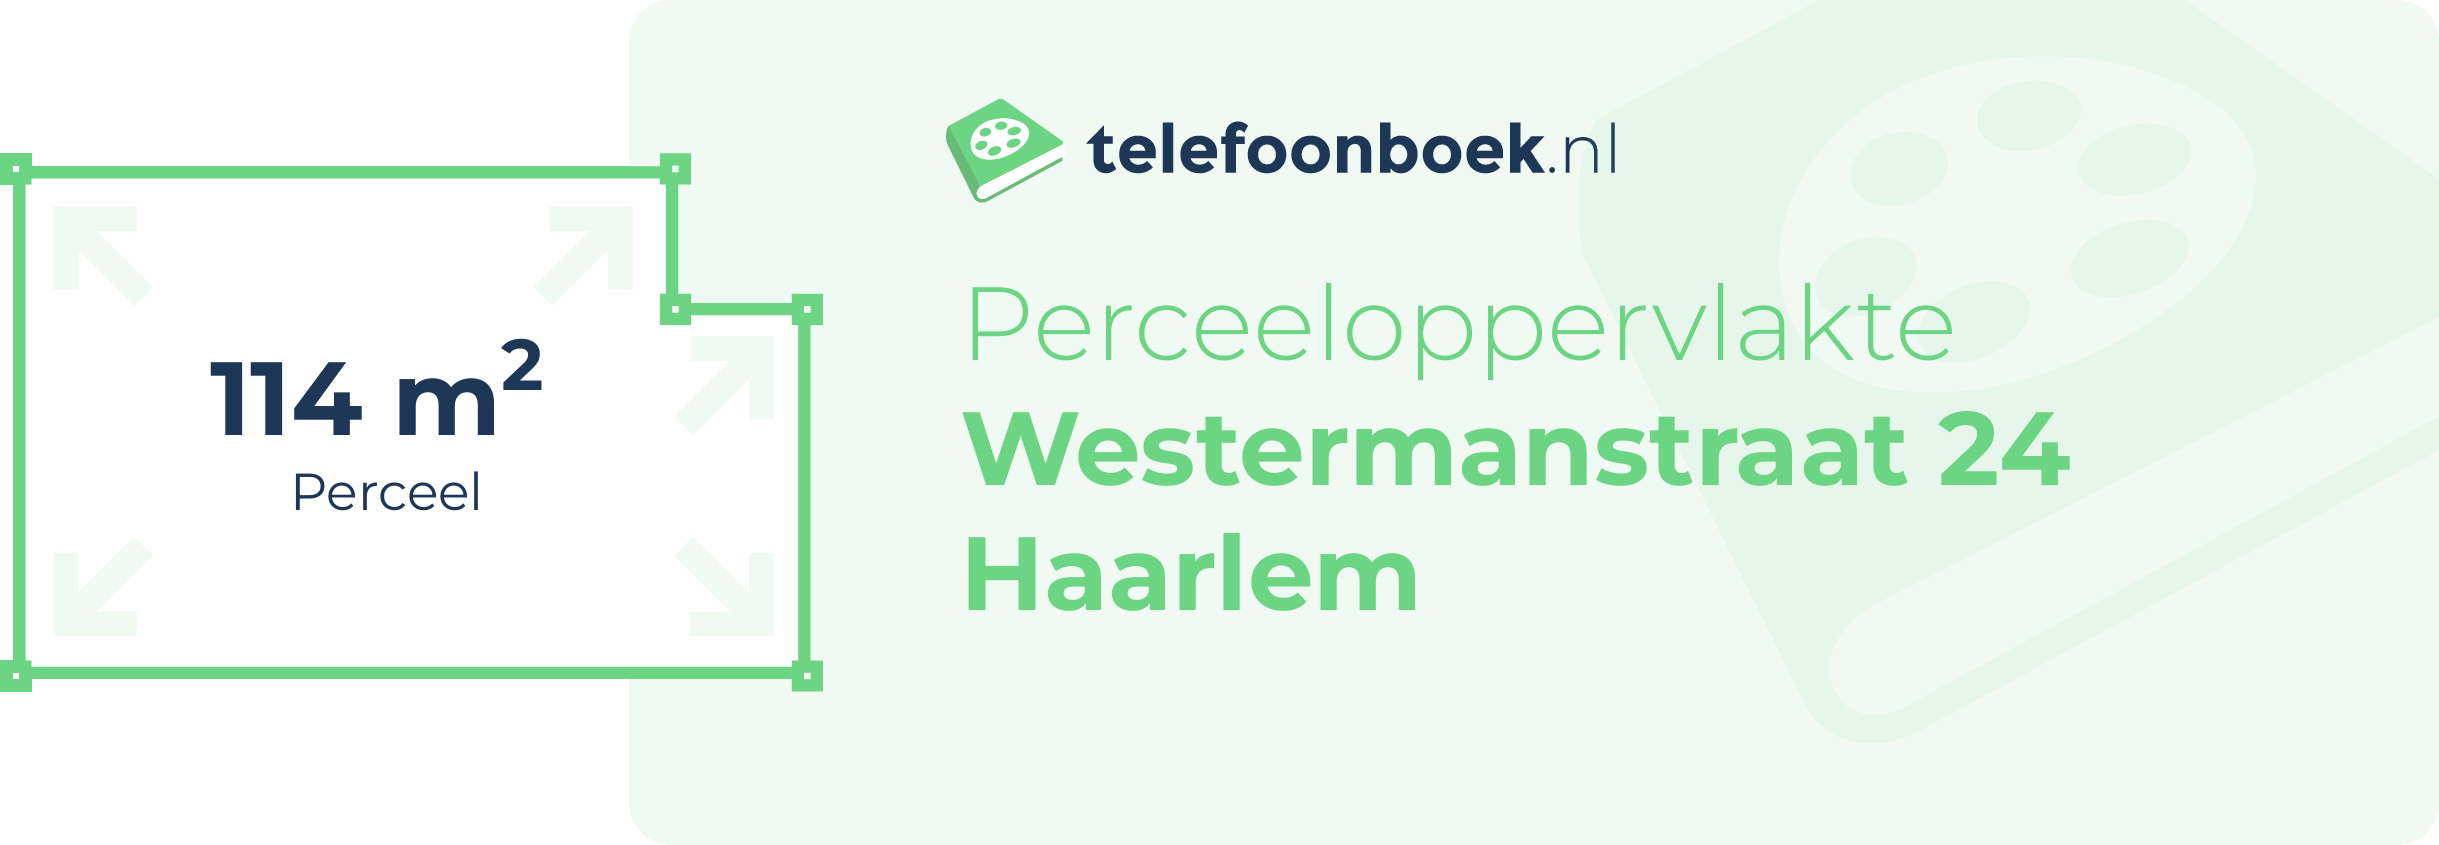 Perceeloppervlakte Westermanstraat 24 Haarlem